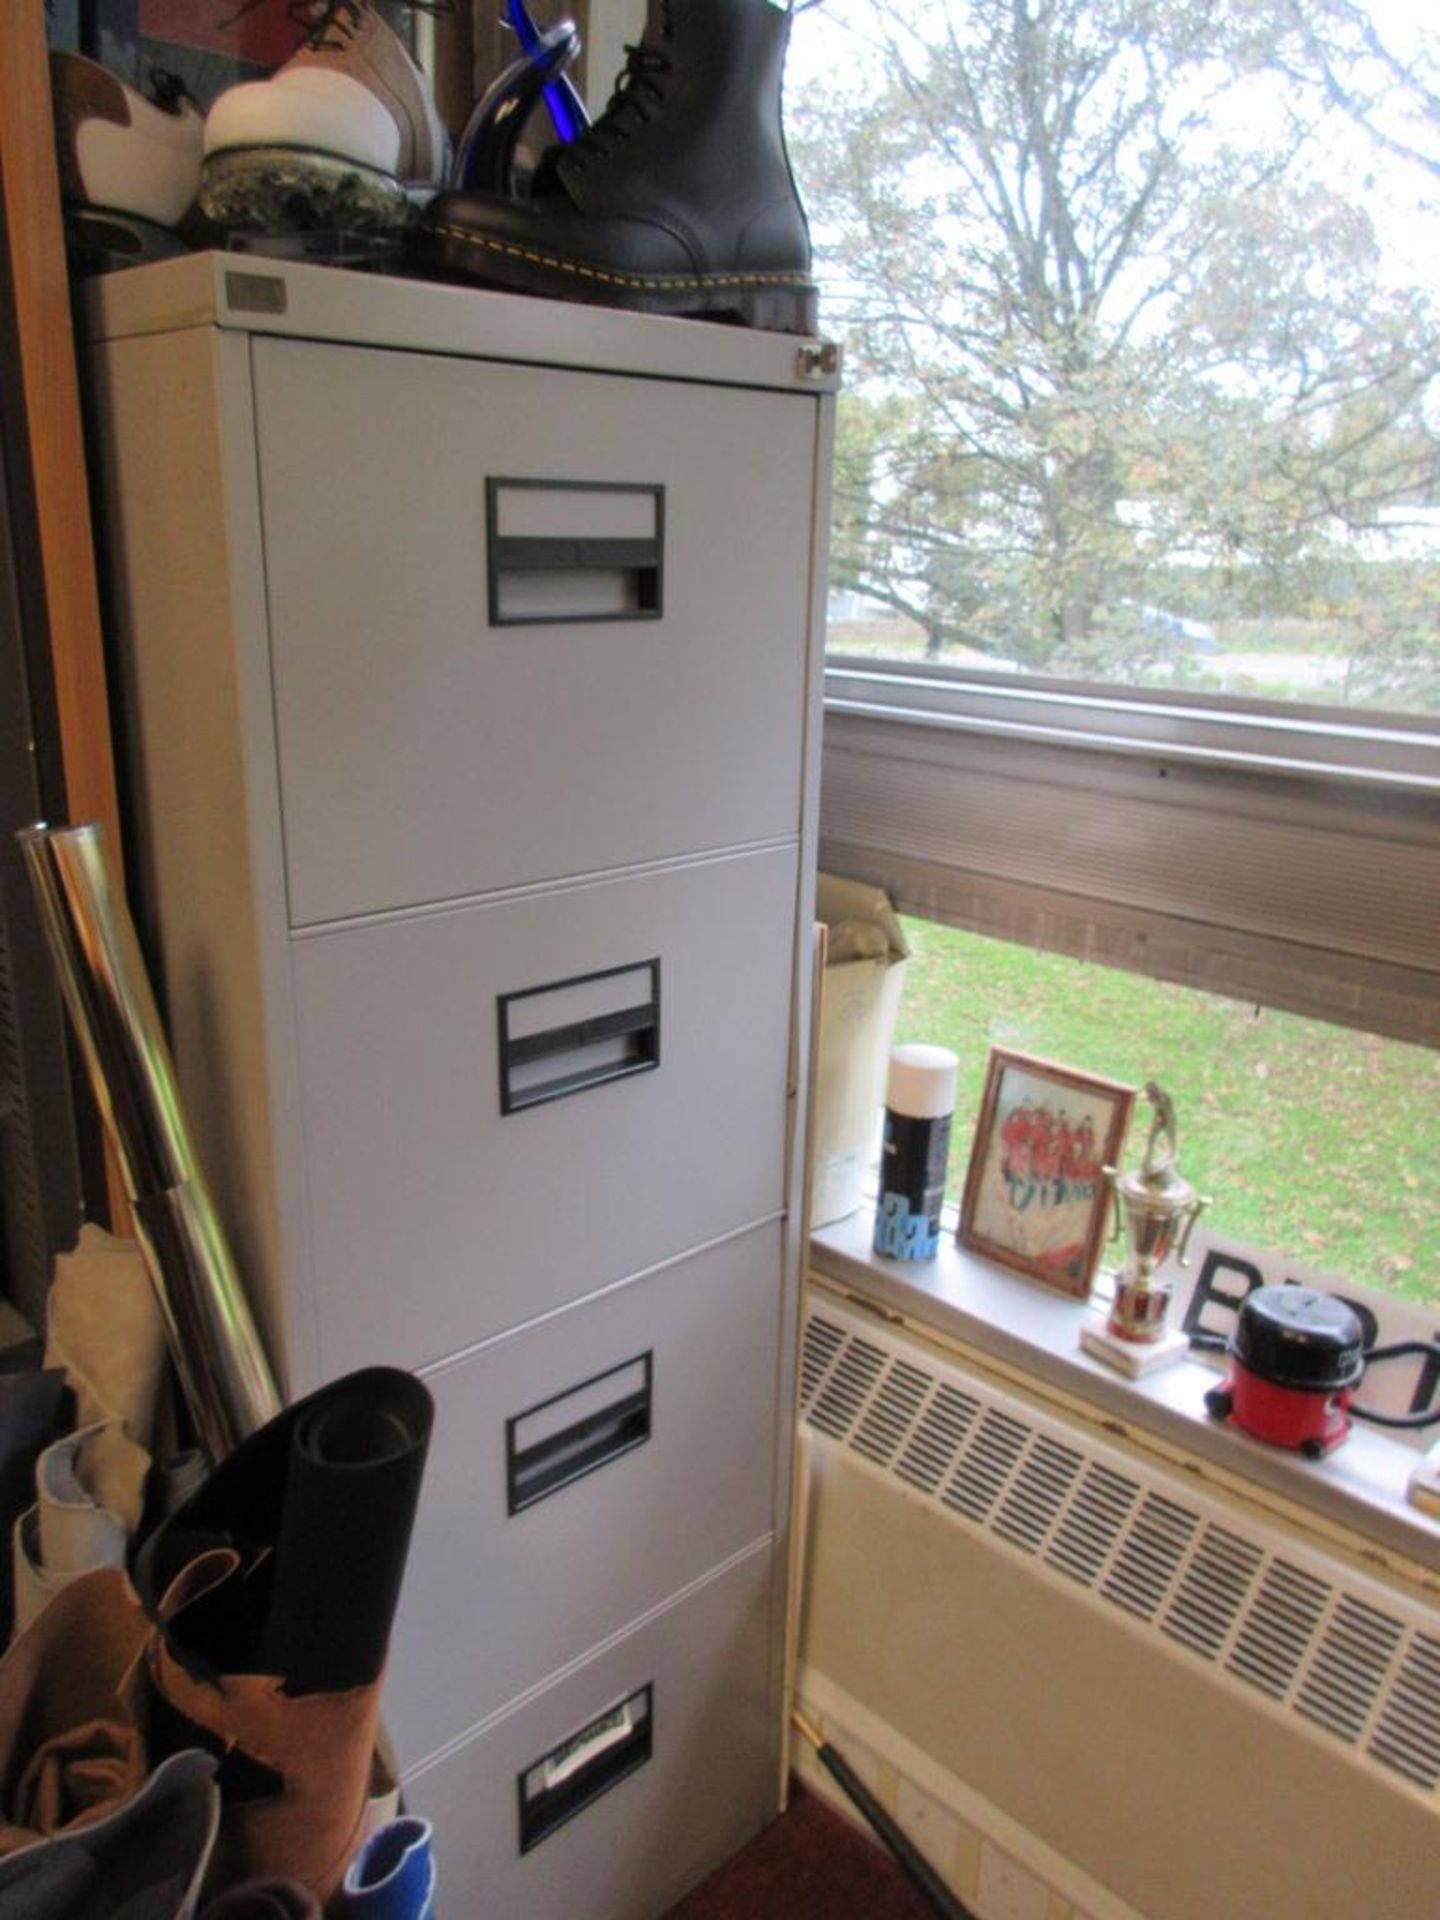 Metal 4-drawer filing cabinet, 1 x metal 2-door storage cupboard - excluding any contents - Bild 2 aus 3